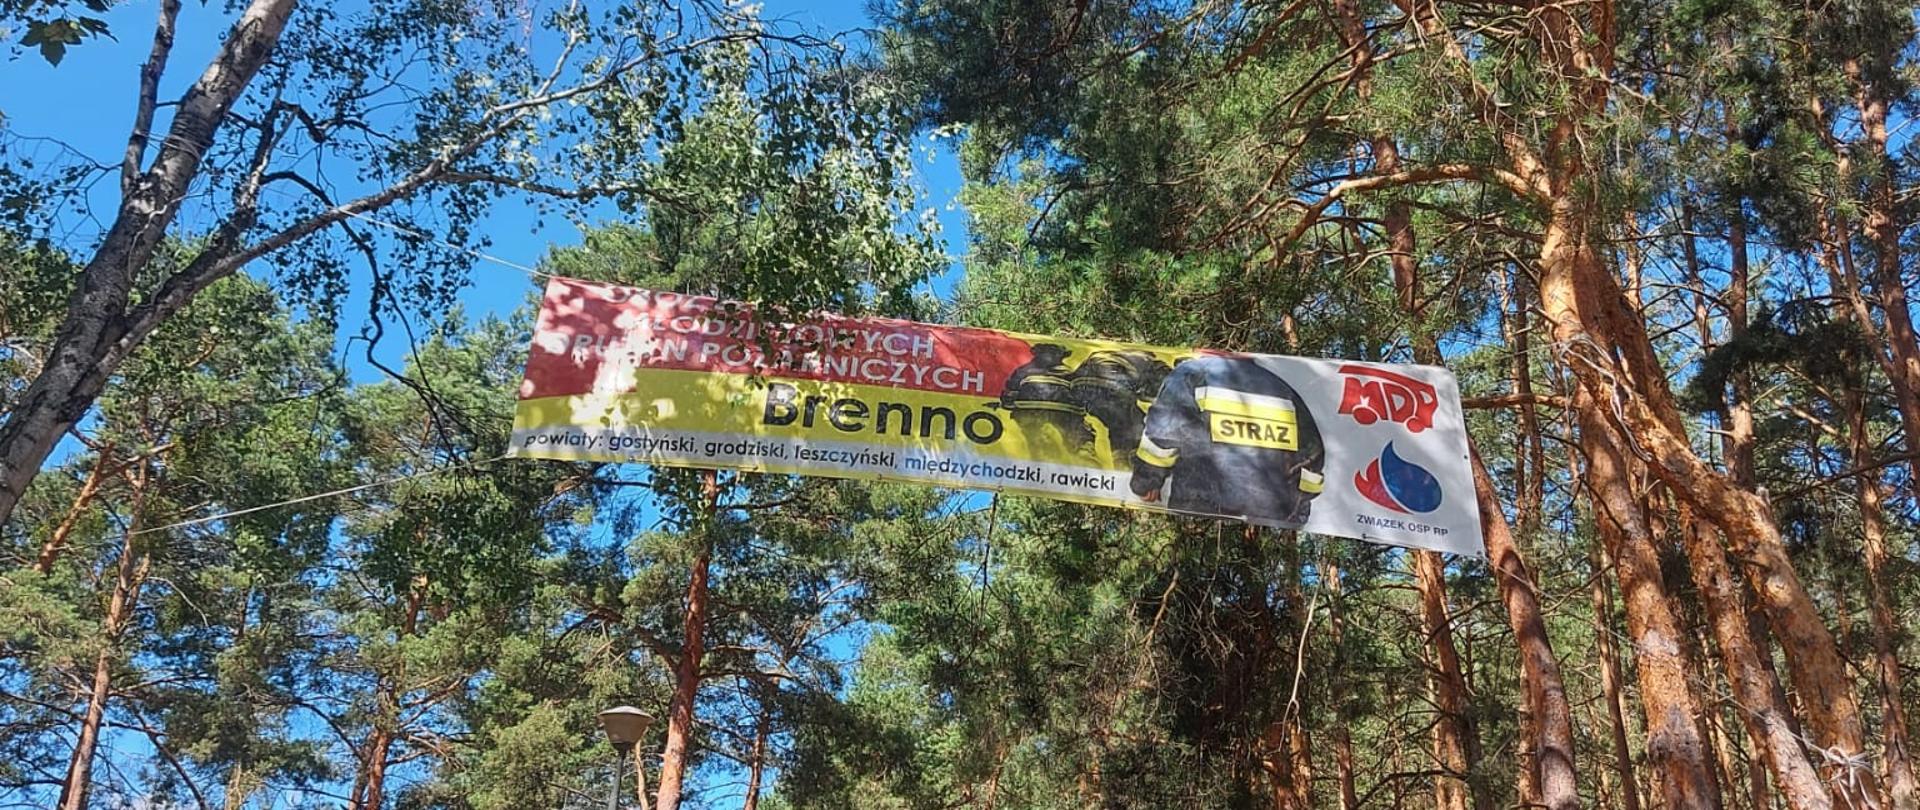 Plakat rozwieszony między drzewami z napisem MDP i wizerunkami strażaków.